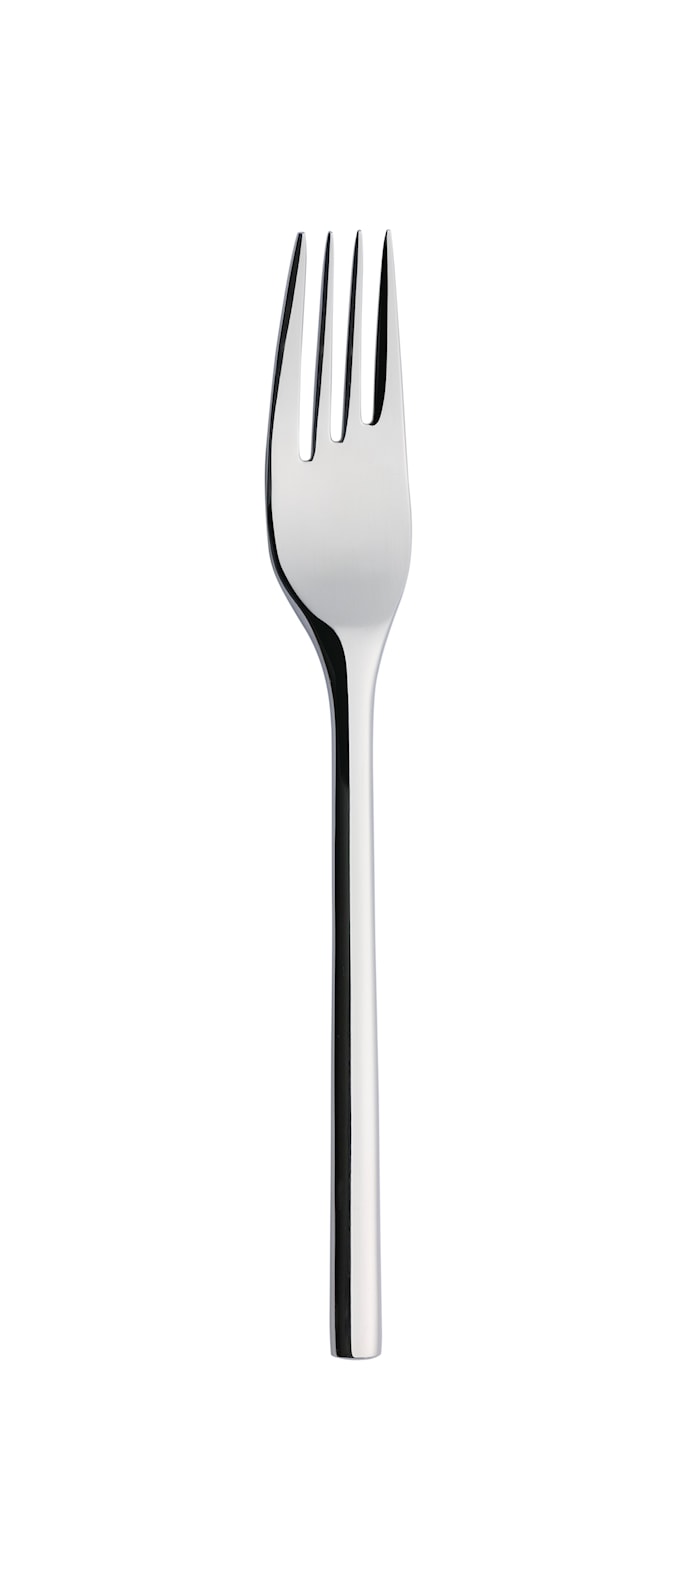 Artik tenedor de mesa